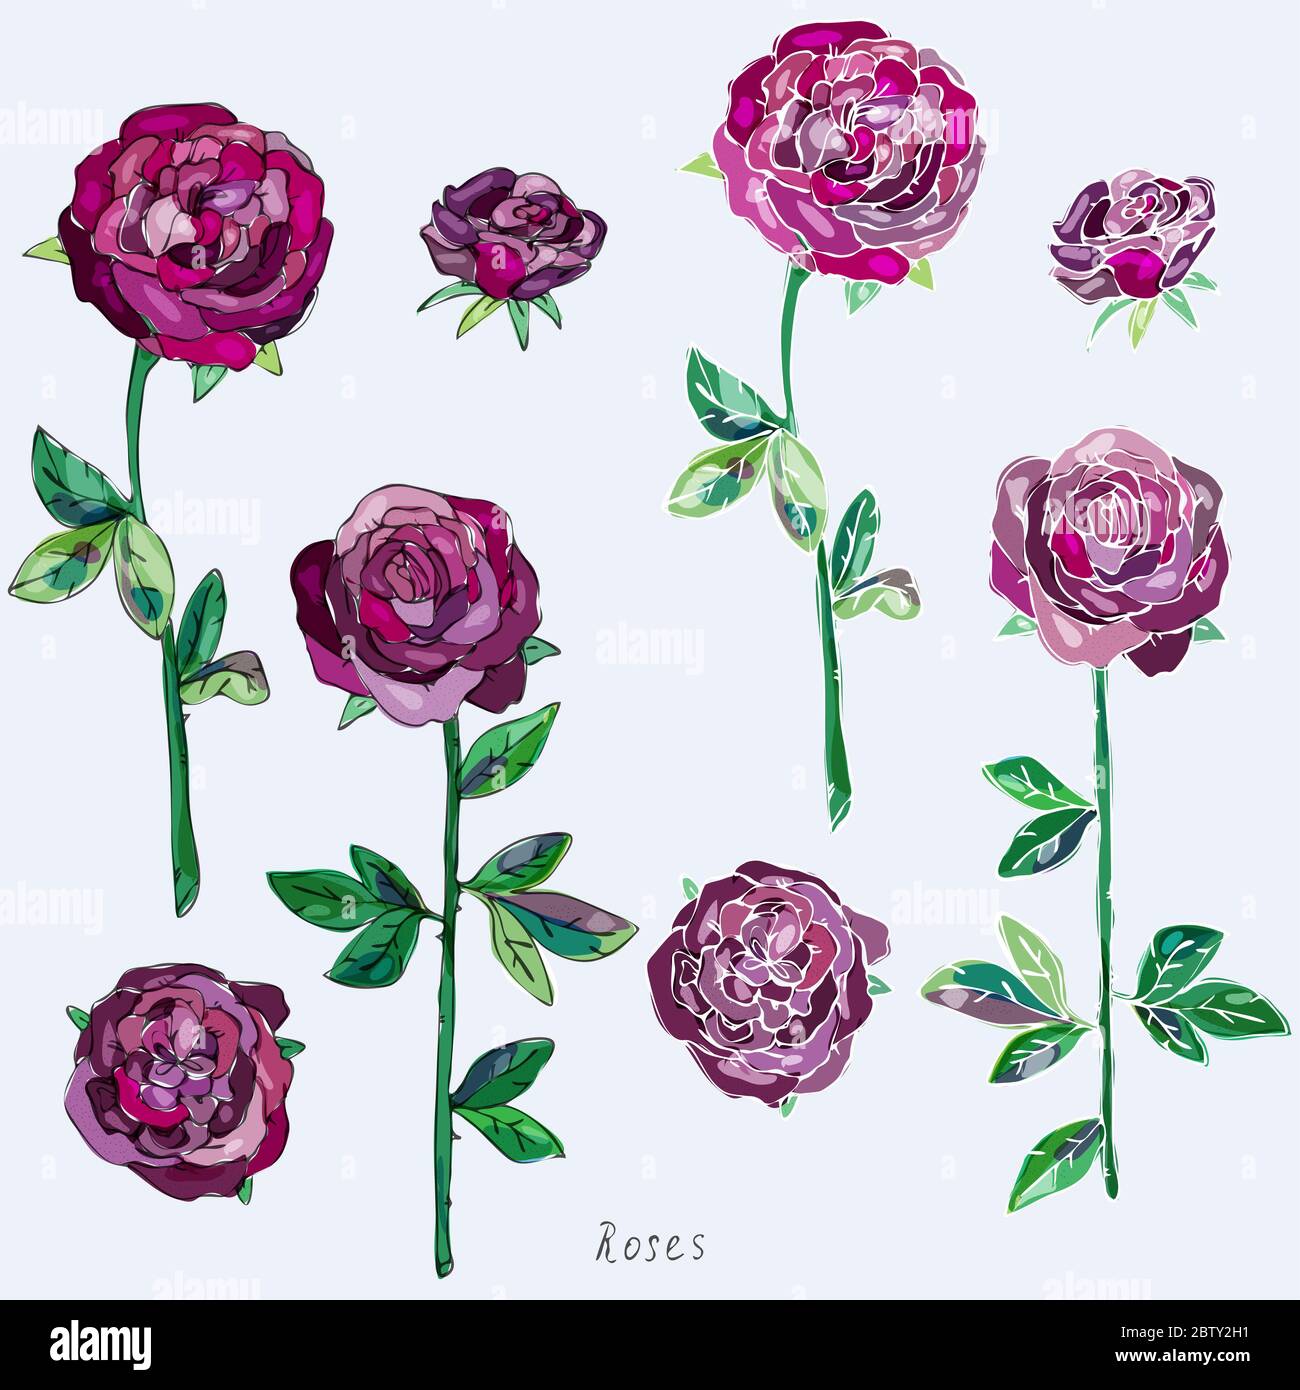 Kastanienbraune, lila, burgunderrote Rosen mit grünen Blättern und Stielen auf grauem Hintergrund. Imitation von Aquarell. Nahtloses Muster. Vektorgrafik. EPS10 Stockfoto